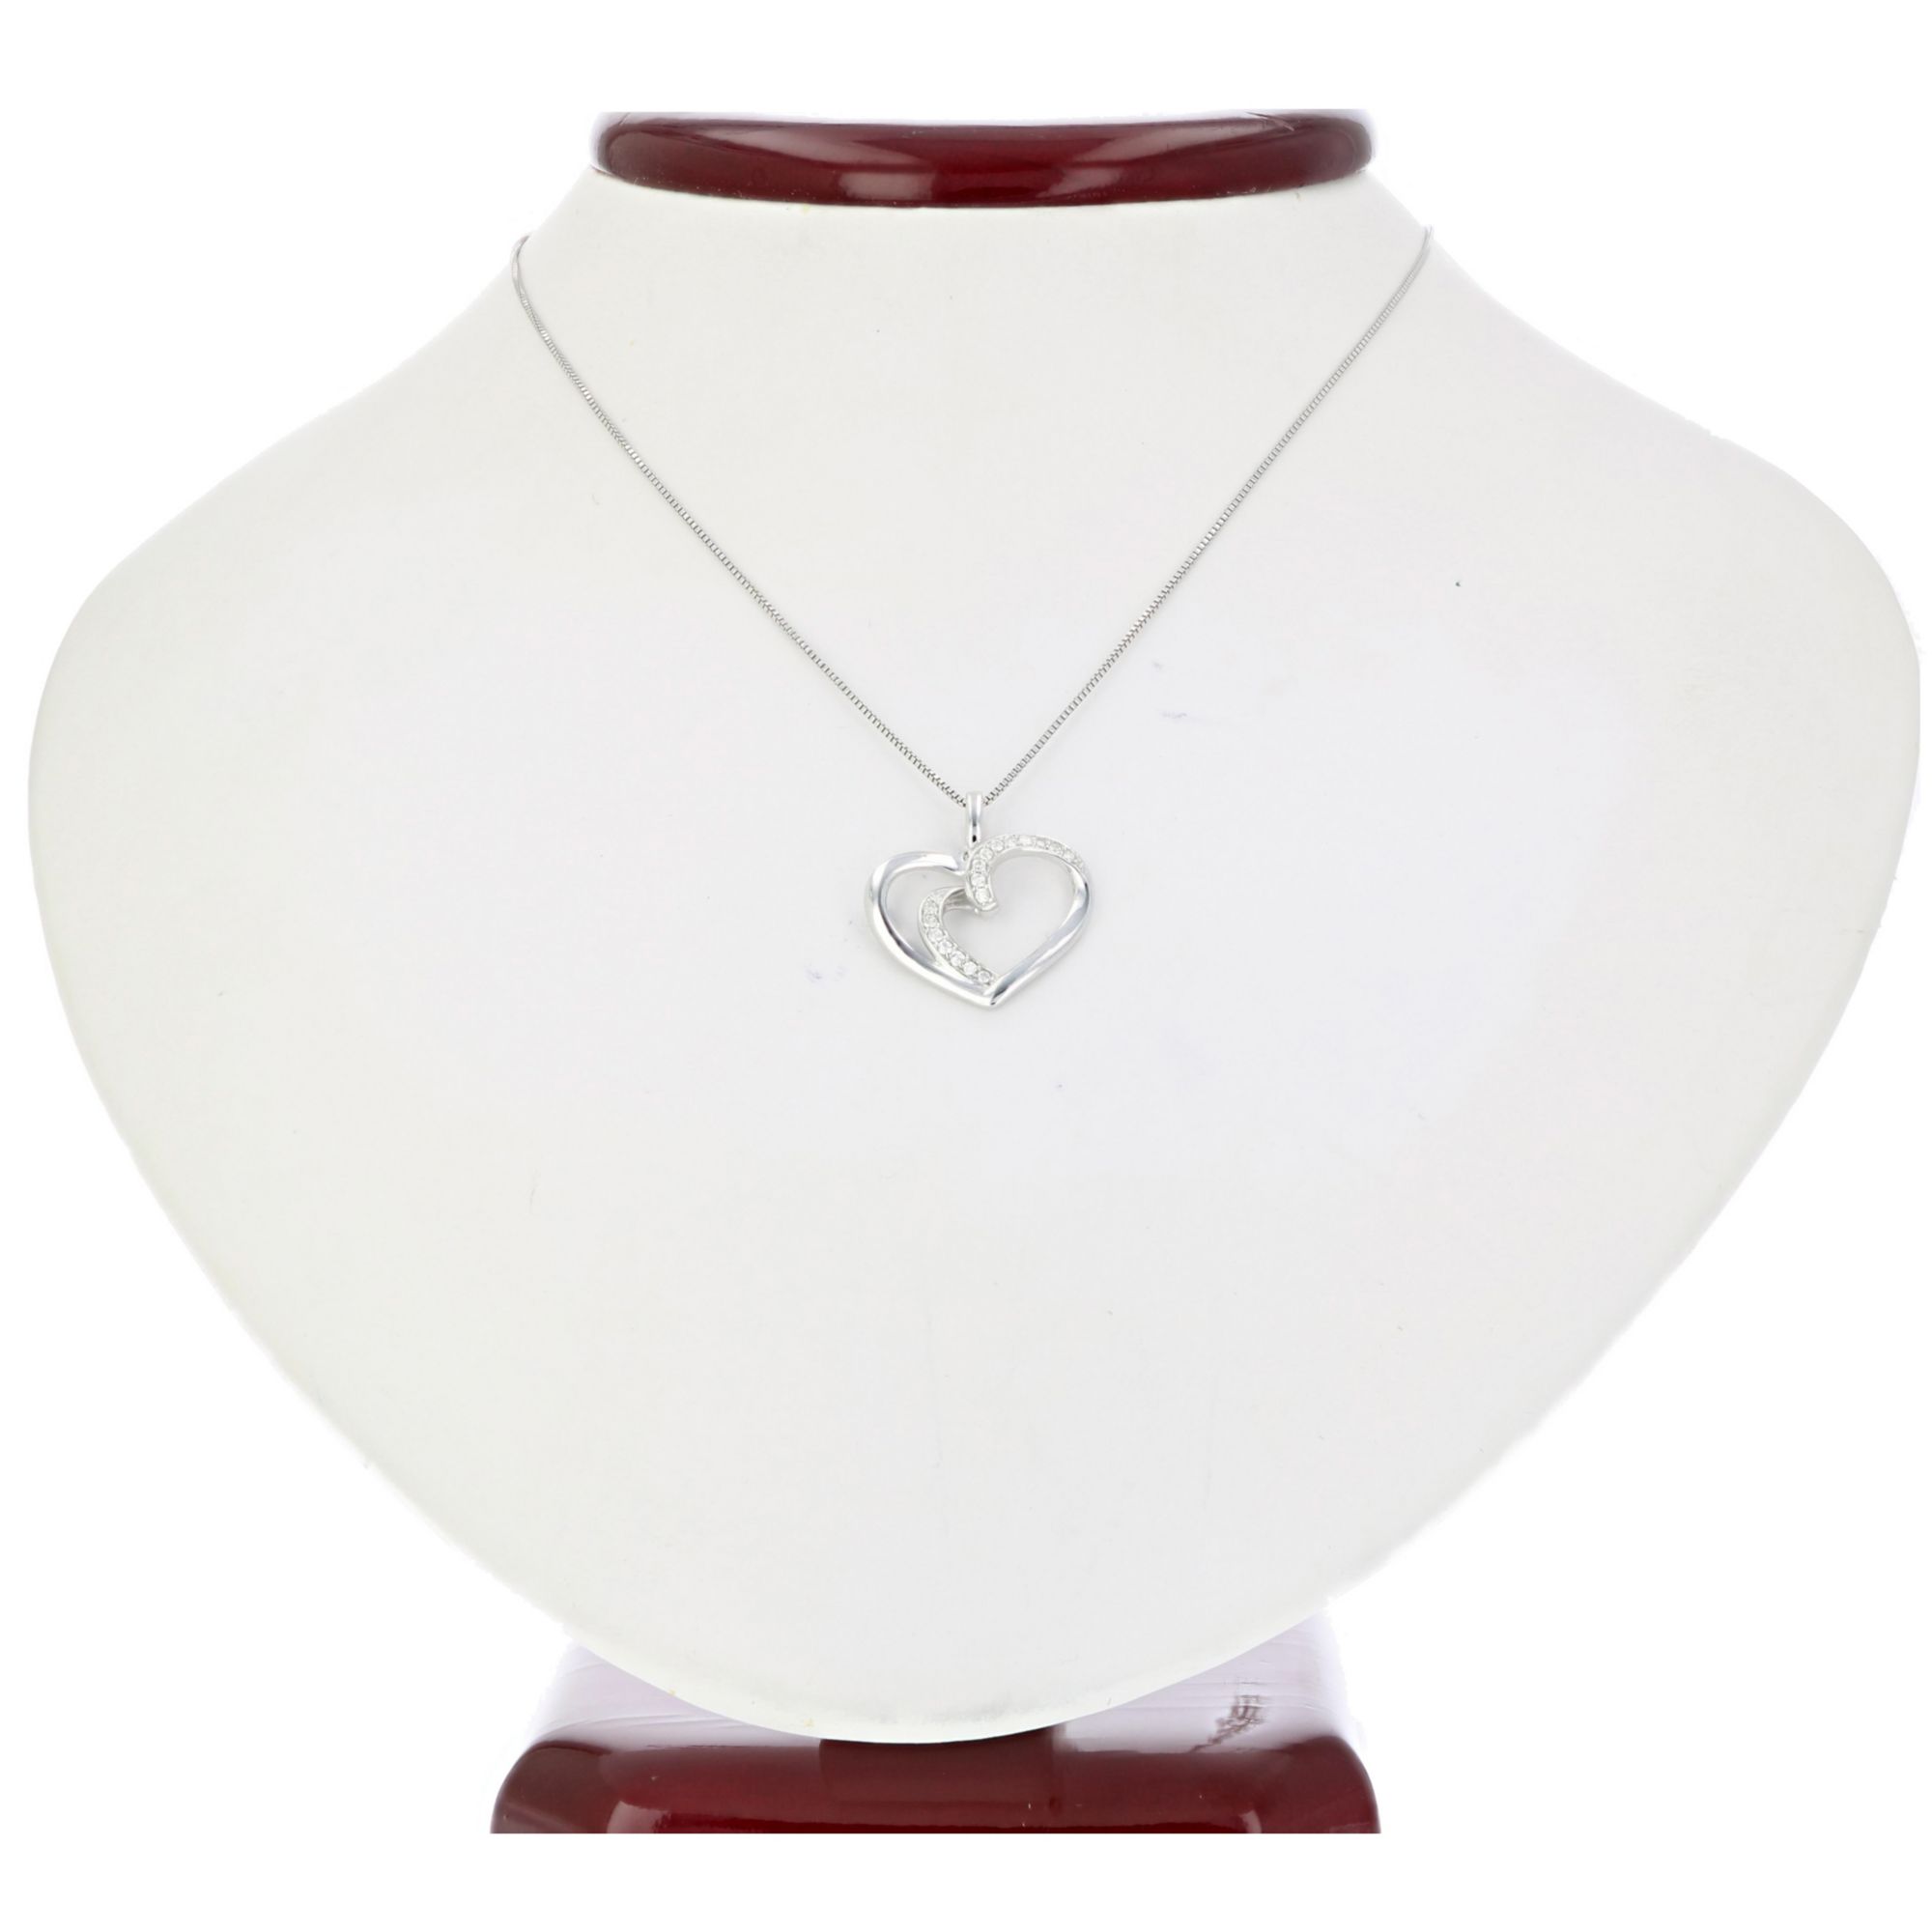 1/5 CT. T.W. Diamond Heart Assorted Charm Bracelet in Sterling Silver